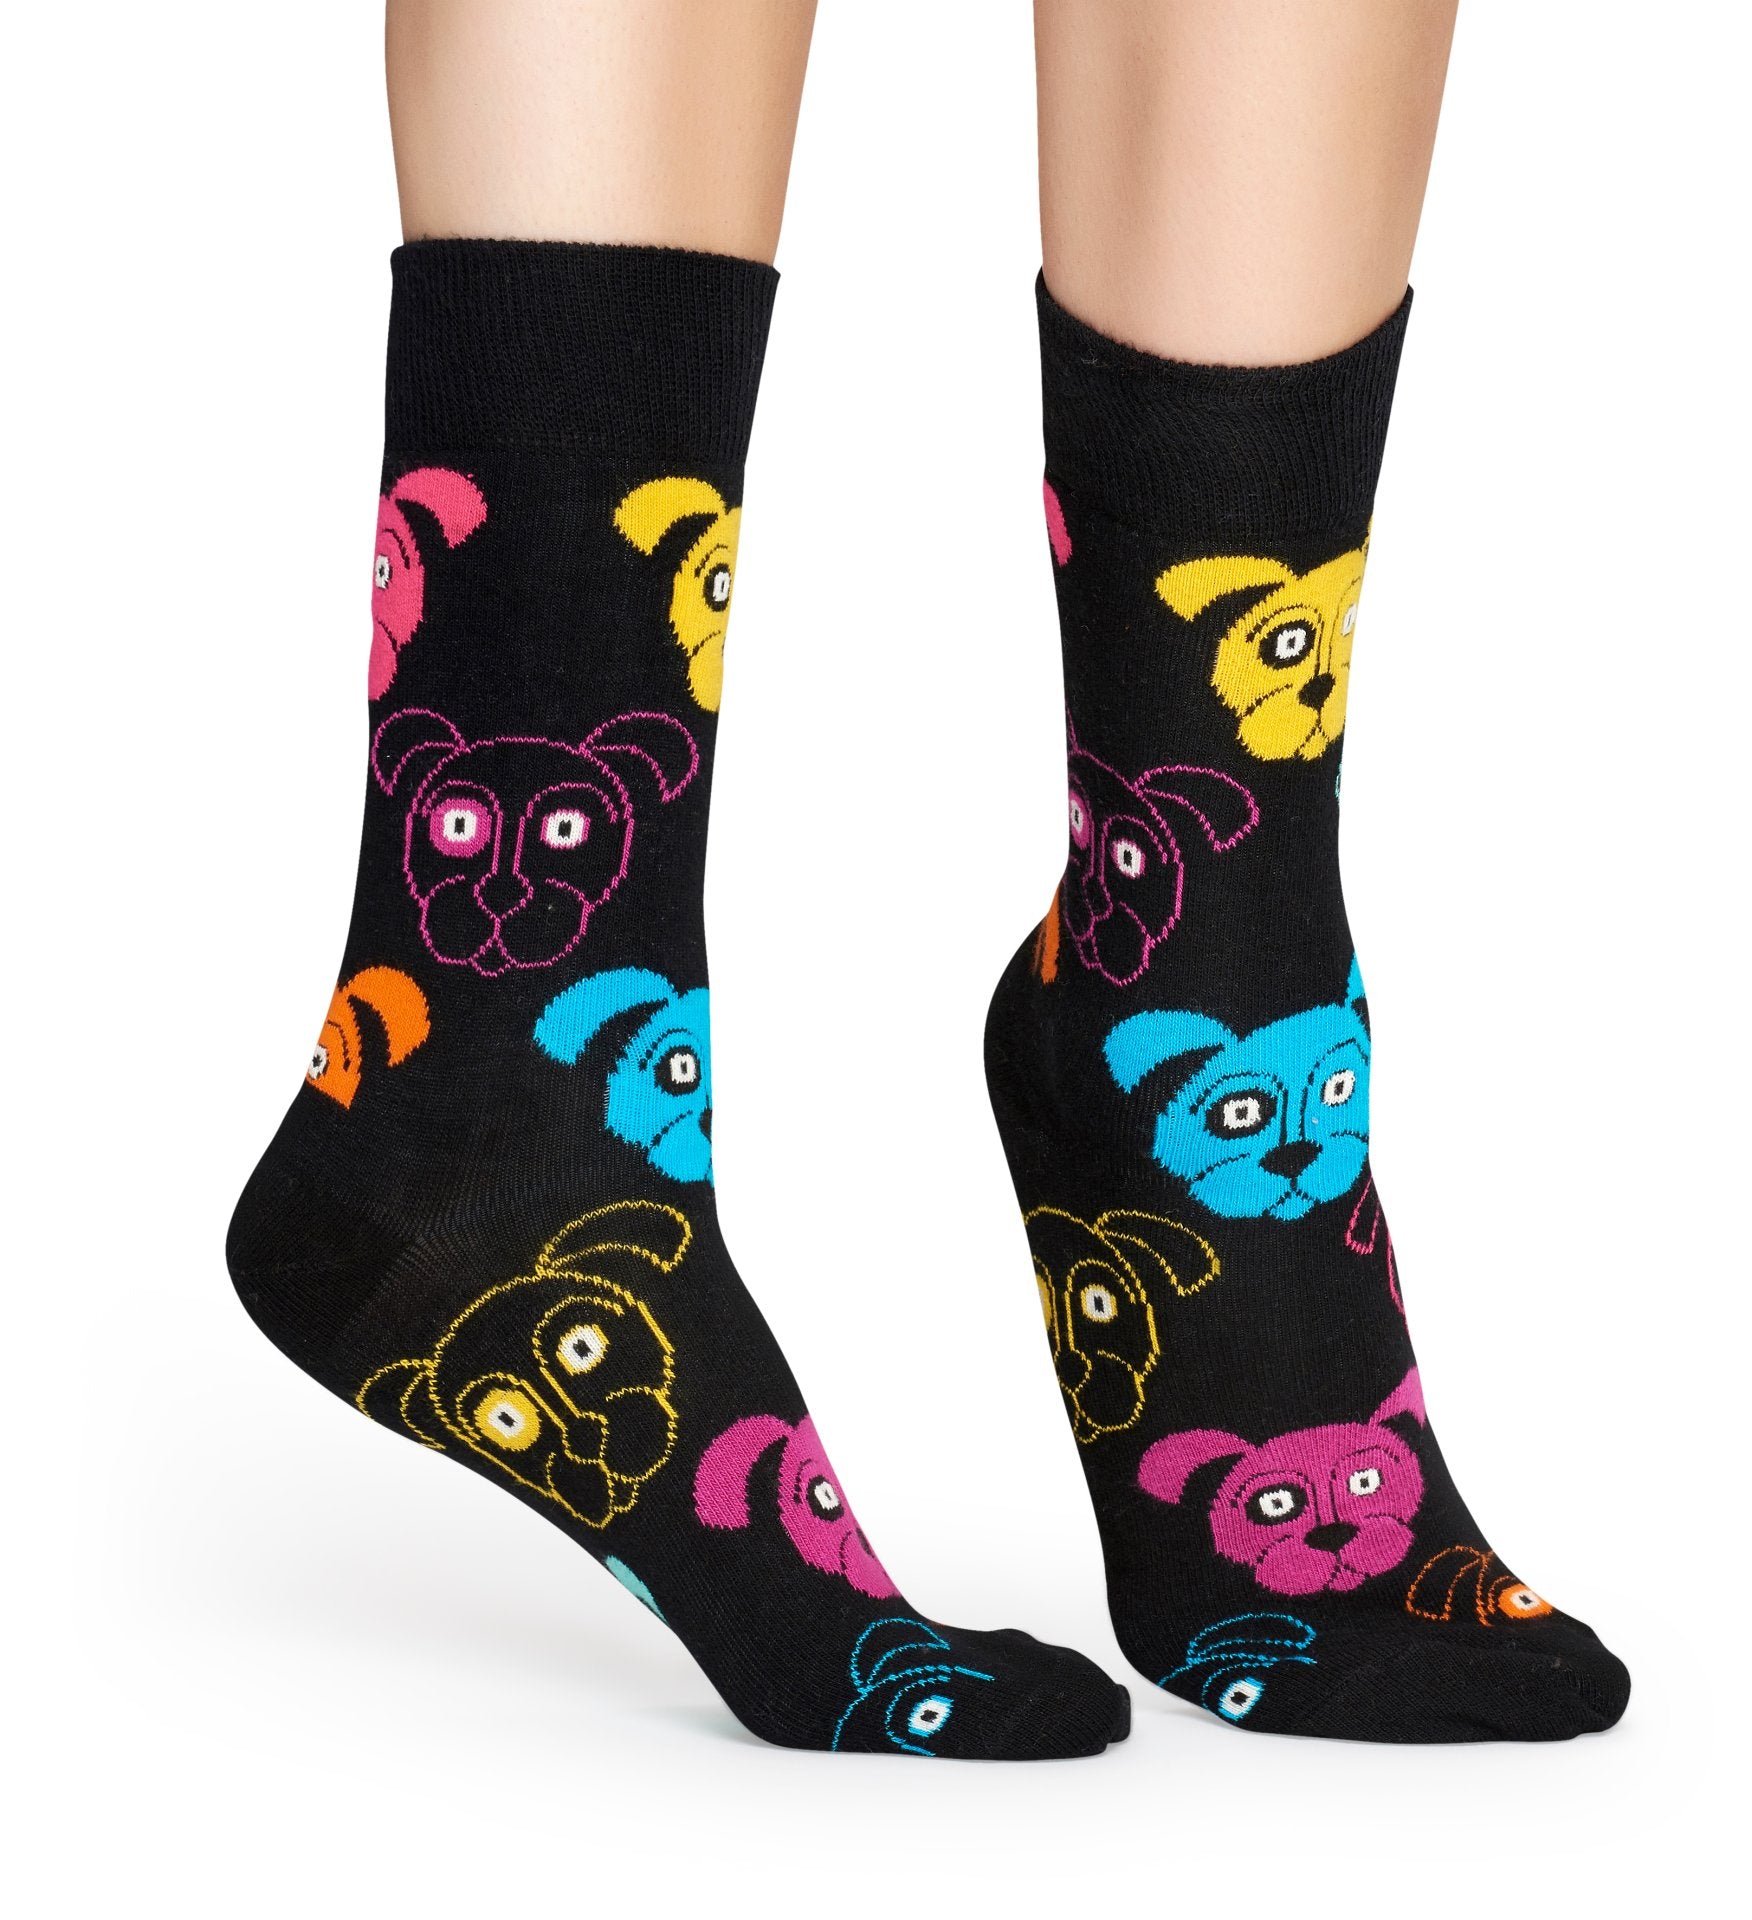 Černé ponožky Happy Socks s barevnými pejsky, vzor Animal